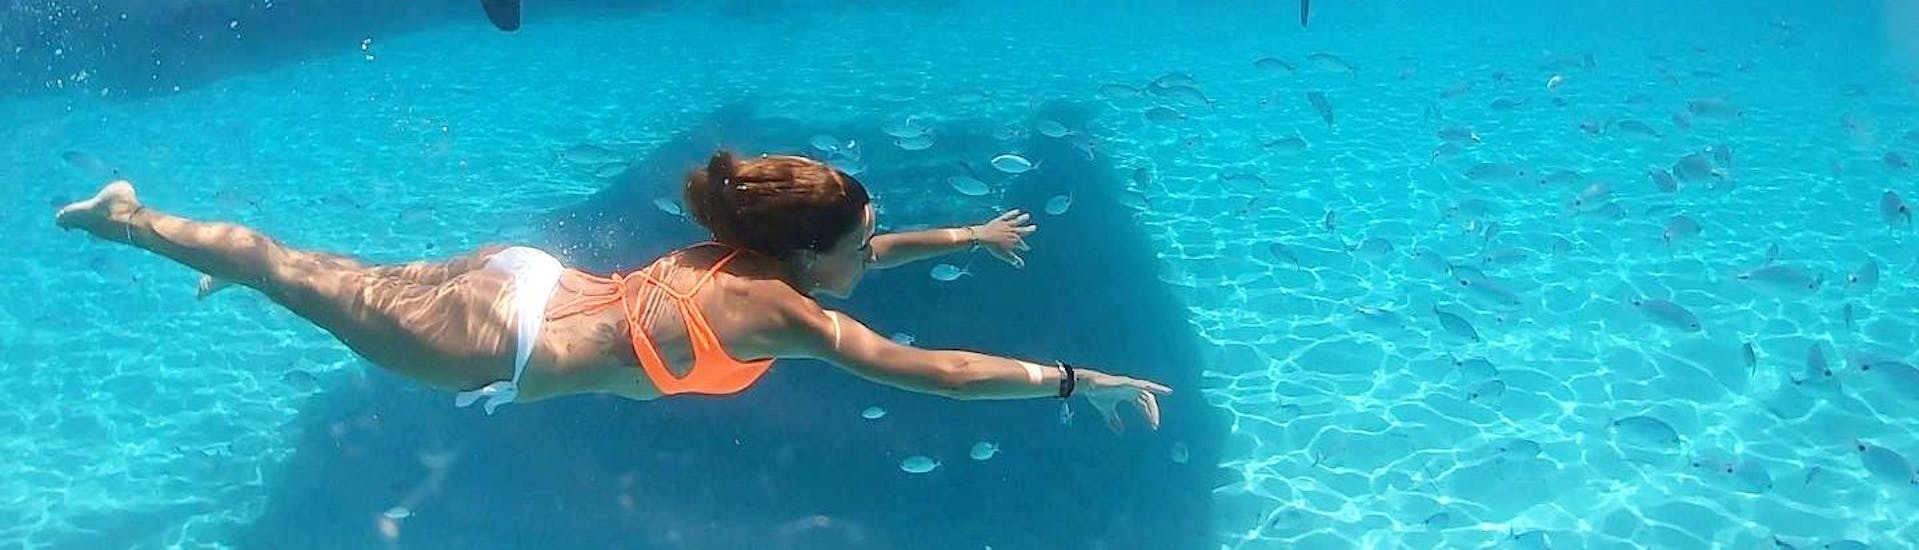 Nuotare in acque cristalline è possibile con la gita privata in catamarano al Parco dell'Asinara e La Pelosa con Buriana Charter.